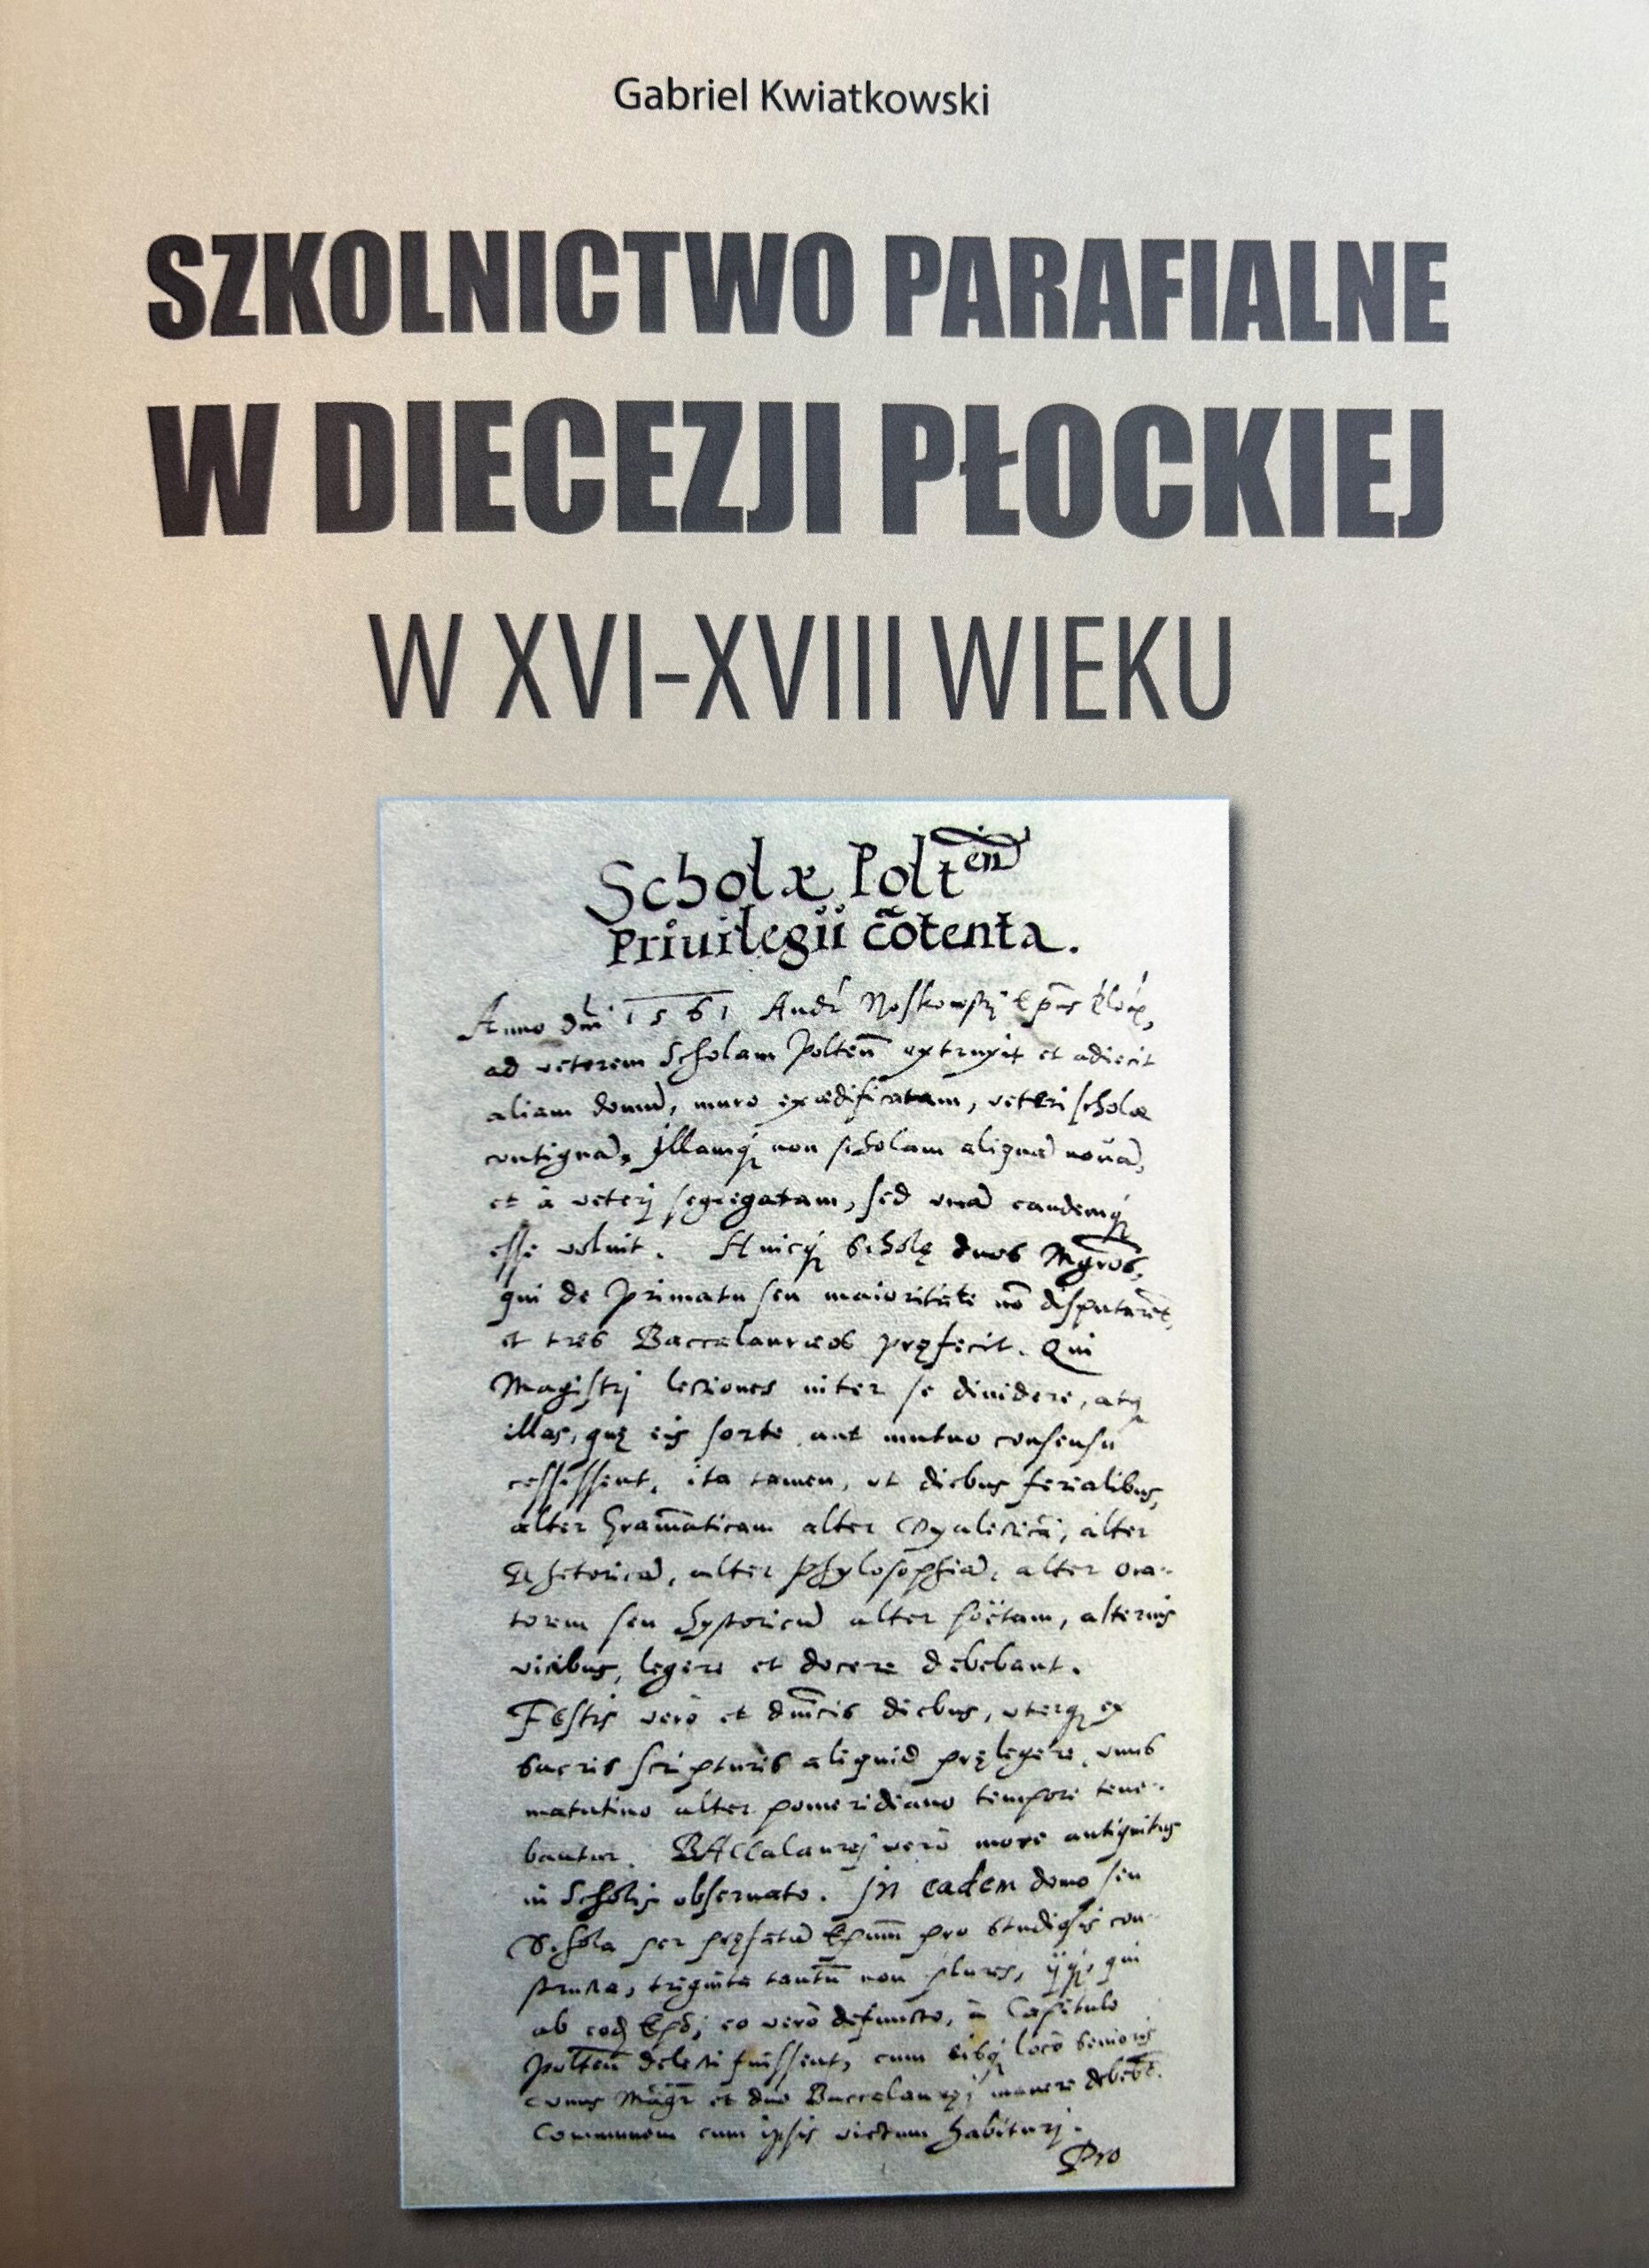 Szkolnictwo parafialne w diecezji płockiej